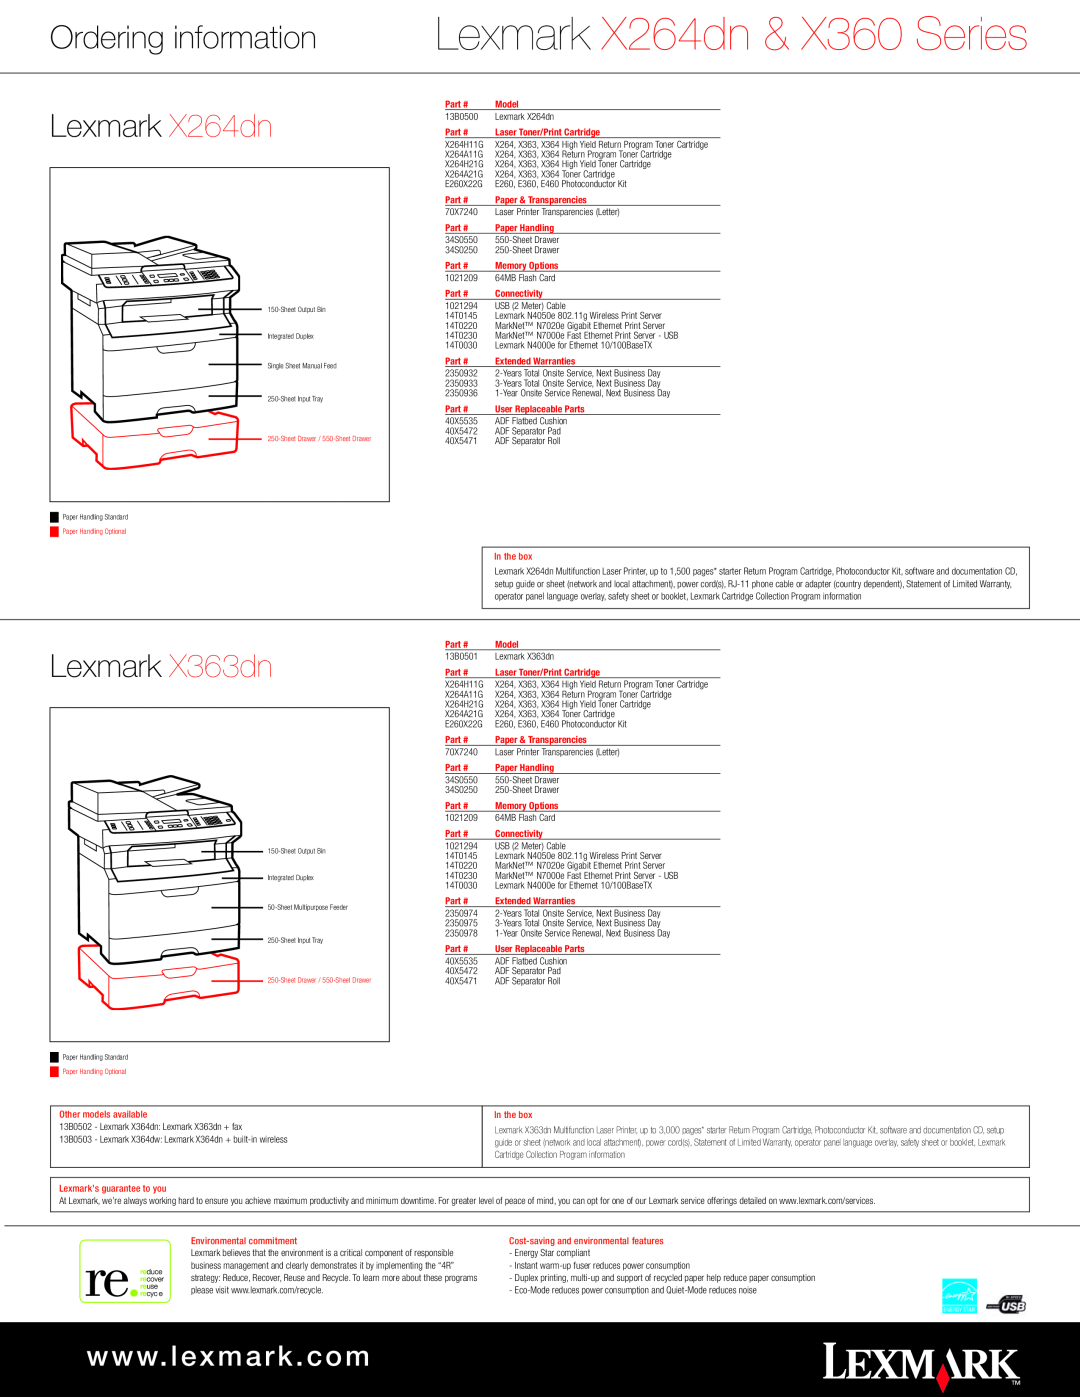 Lexmark Ordering information Lexmark X264dn, Lexmark X363dn, Lexmark X264dn & X360 Series, w w w. l e x m a r k . c o m 